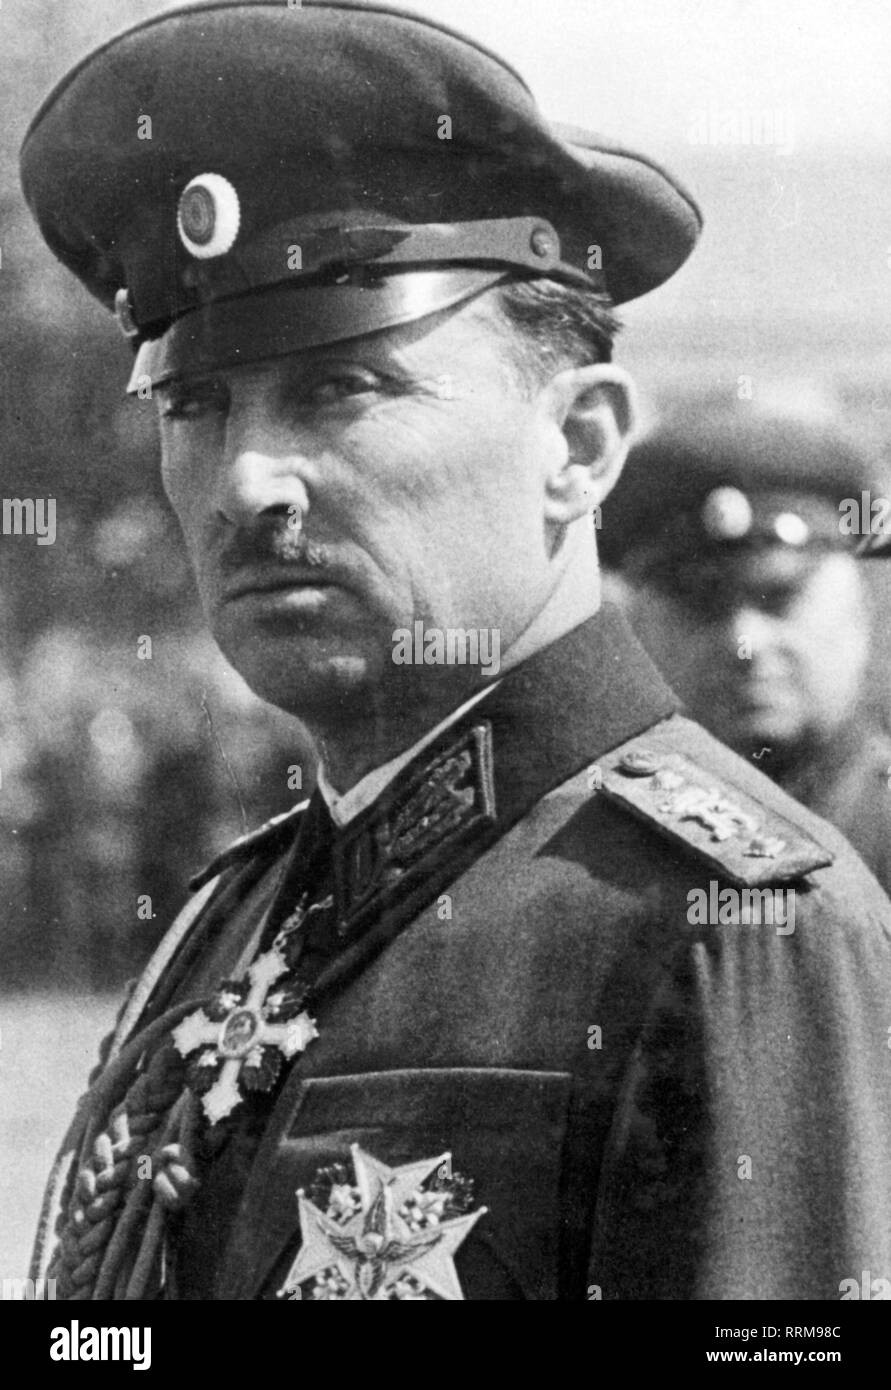 Kyril, 17.11.1895 - 1.2.1945, príncipe de Bulgaria, presidente de la regencia el abogado 28.8.1943 - 9.9.1944, retrato, 1943-Clearance-Info Additional-Rights-Not-Available Foto de stock